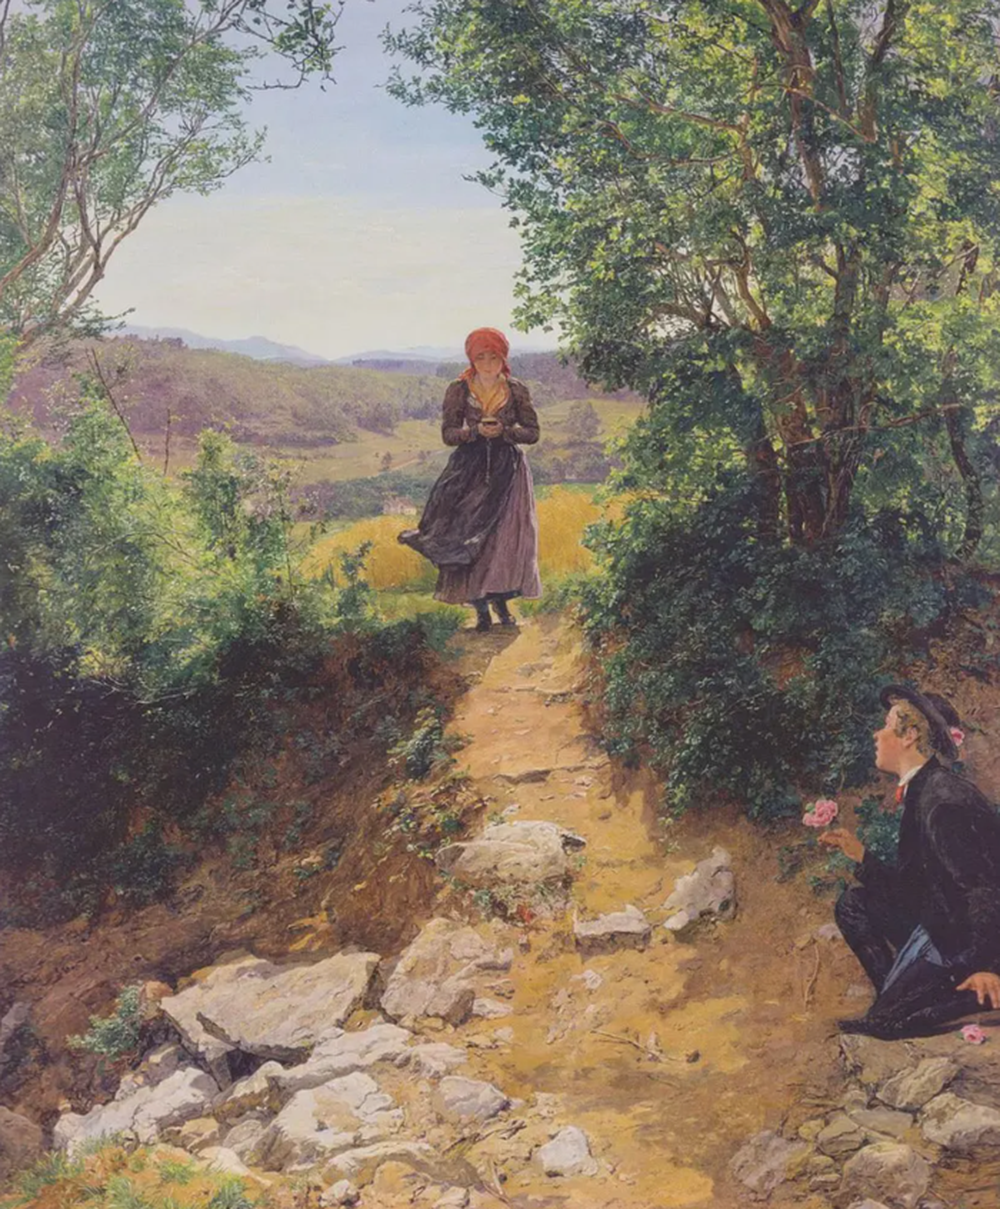 Sự thật đằng sau bức tranh từ năm 1860 vẽ cô gái trông như đang cầm iPhone - Ảnh 1.